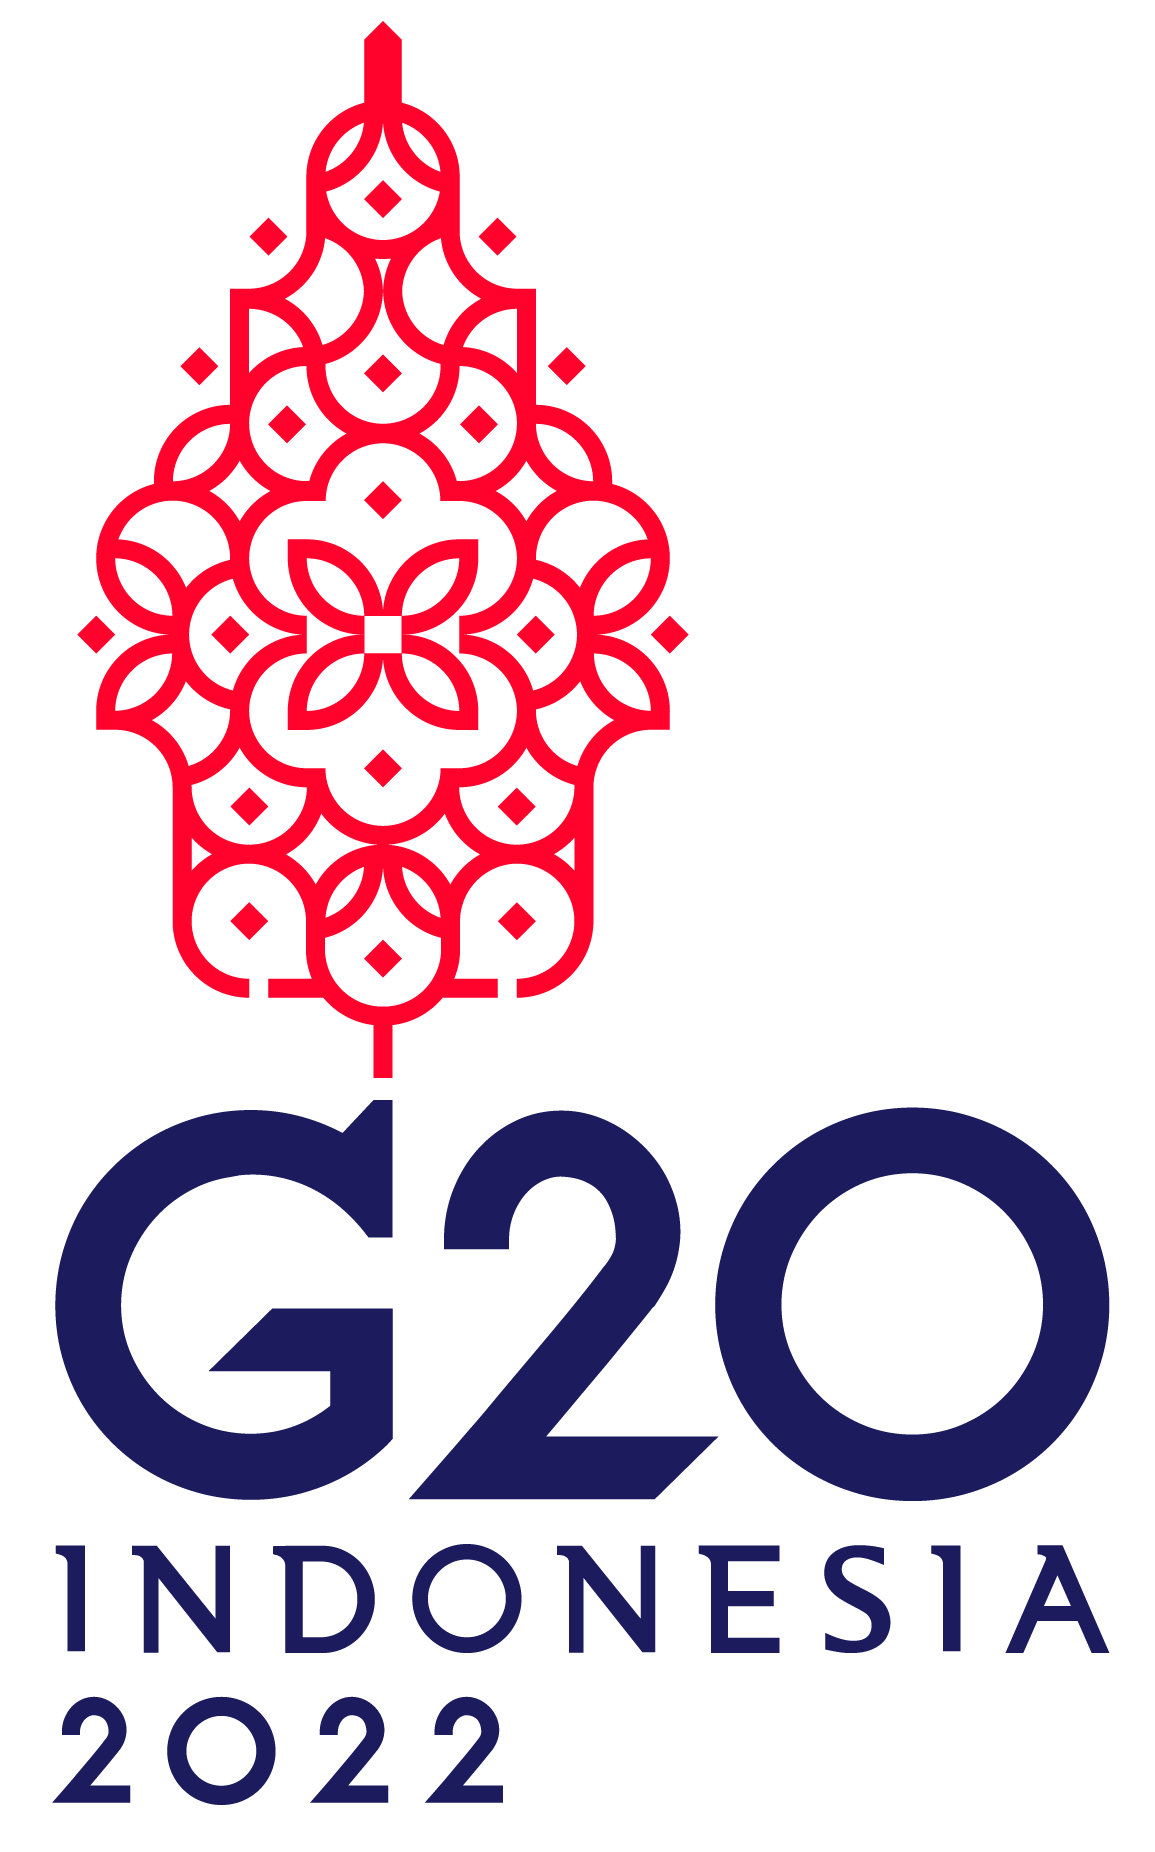 DWG in G20